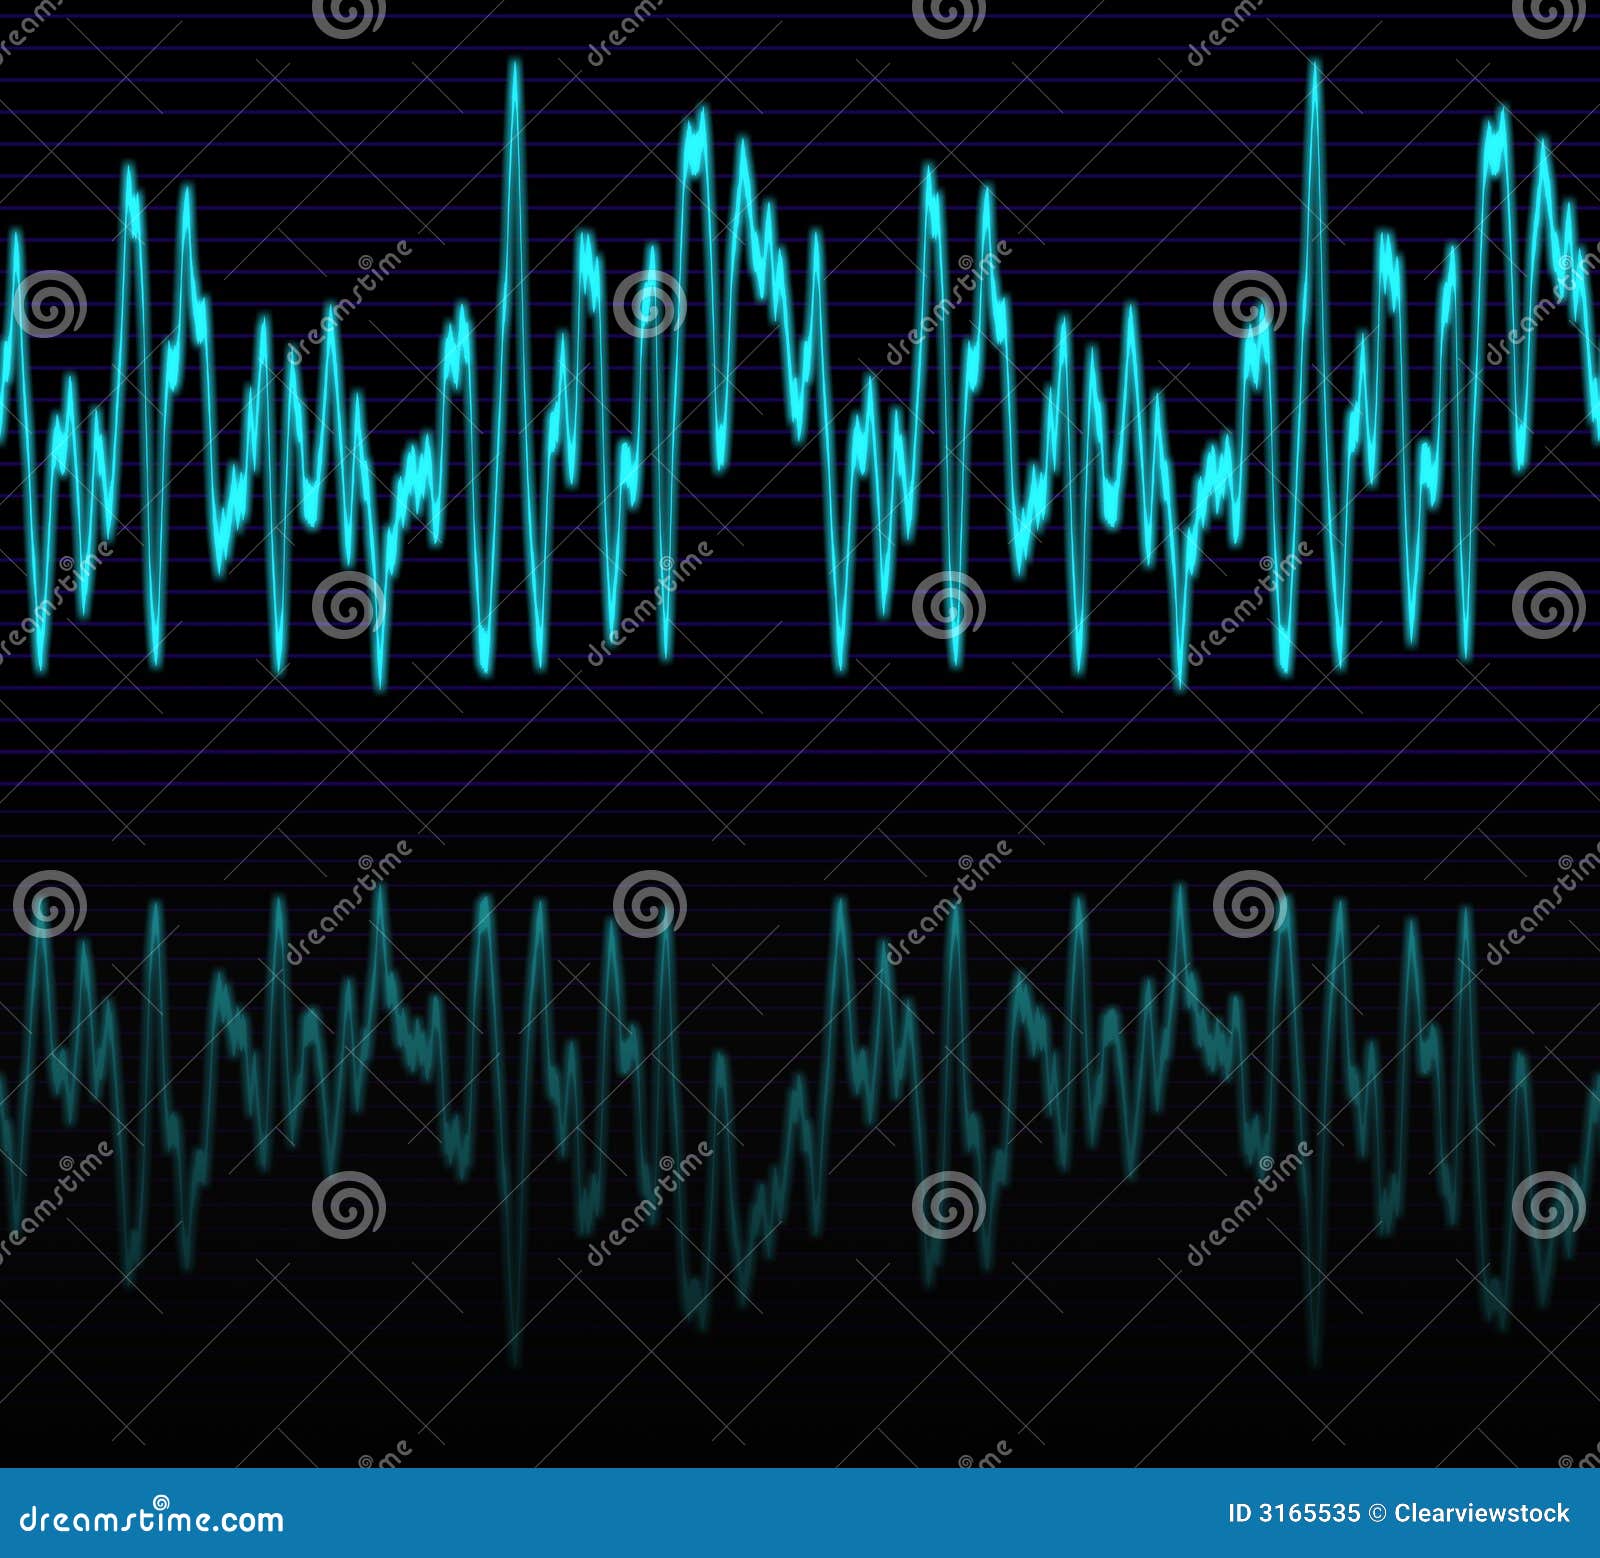 audio or sound sine wave